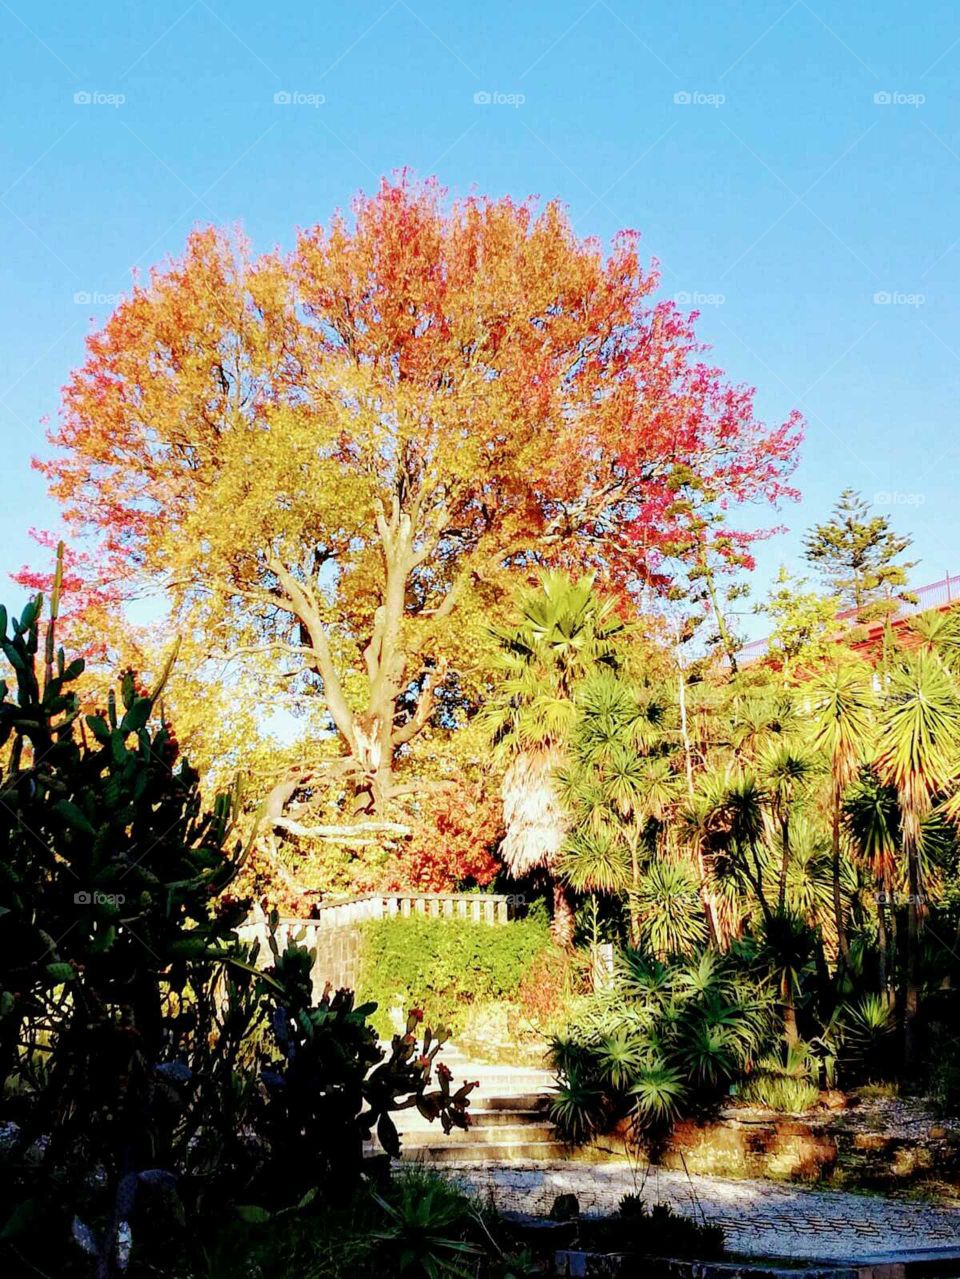 Autumn/Fall at The Porto Botanical Garden